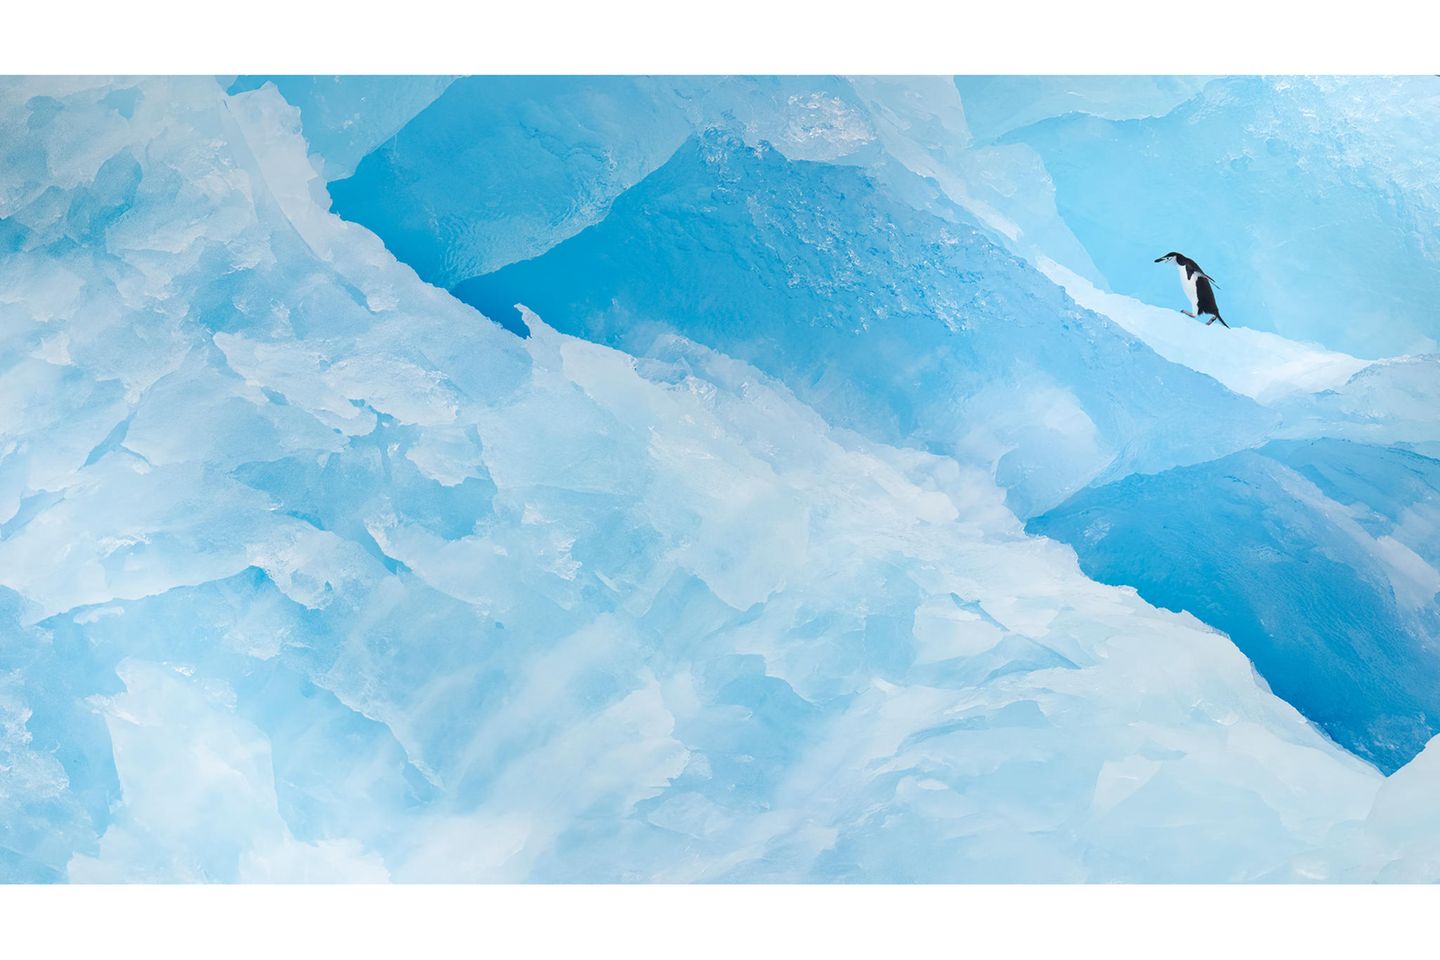 Zügelpinguine leben vor allem im Westen und Norden der antarktischen Halbinsel, aber auch an der Küste der Antarktis und auf wenigen Inseln im Südatlantik